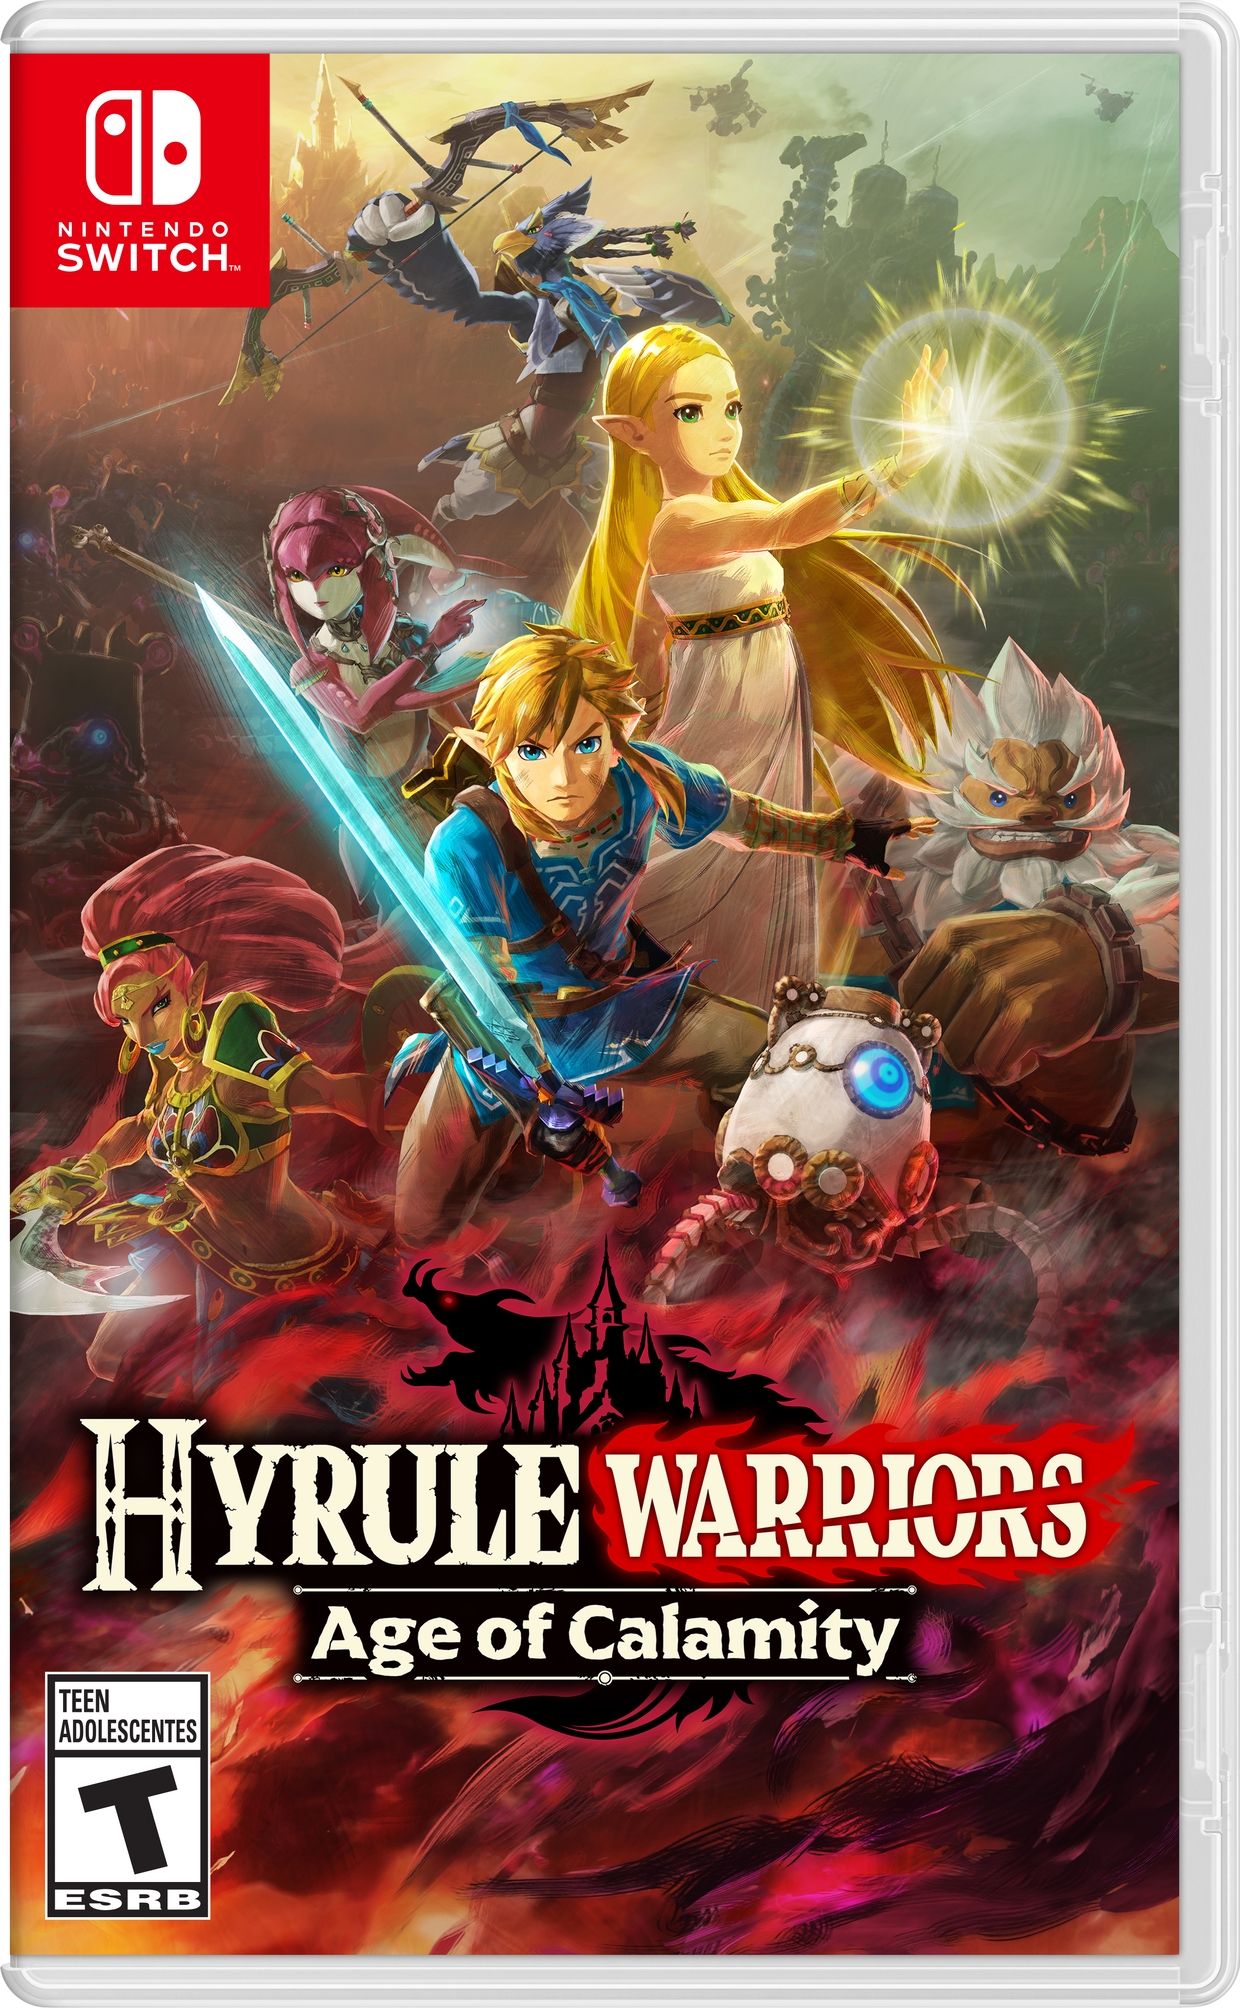 Hyrule Blog - The Zelda Blog: All Zelda Games on Nintendo 3DS and Wii U